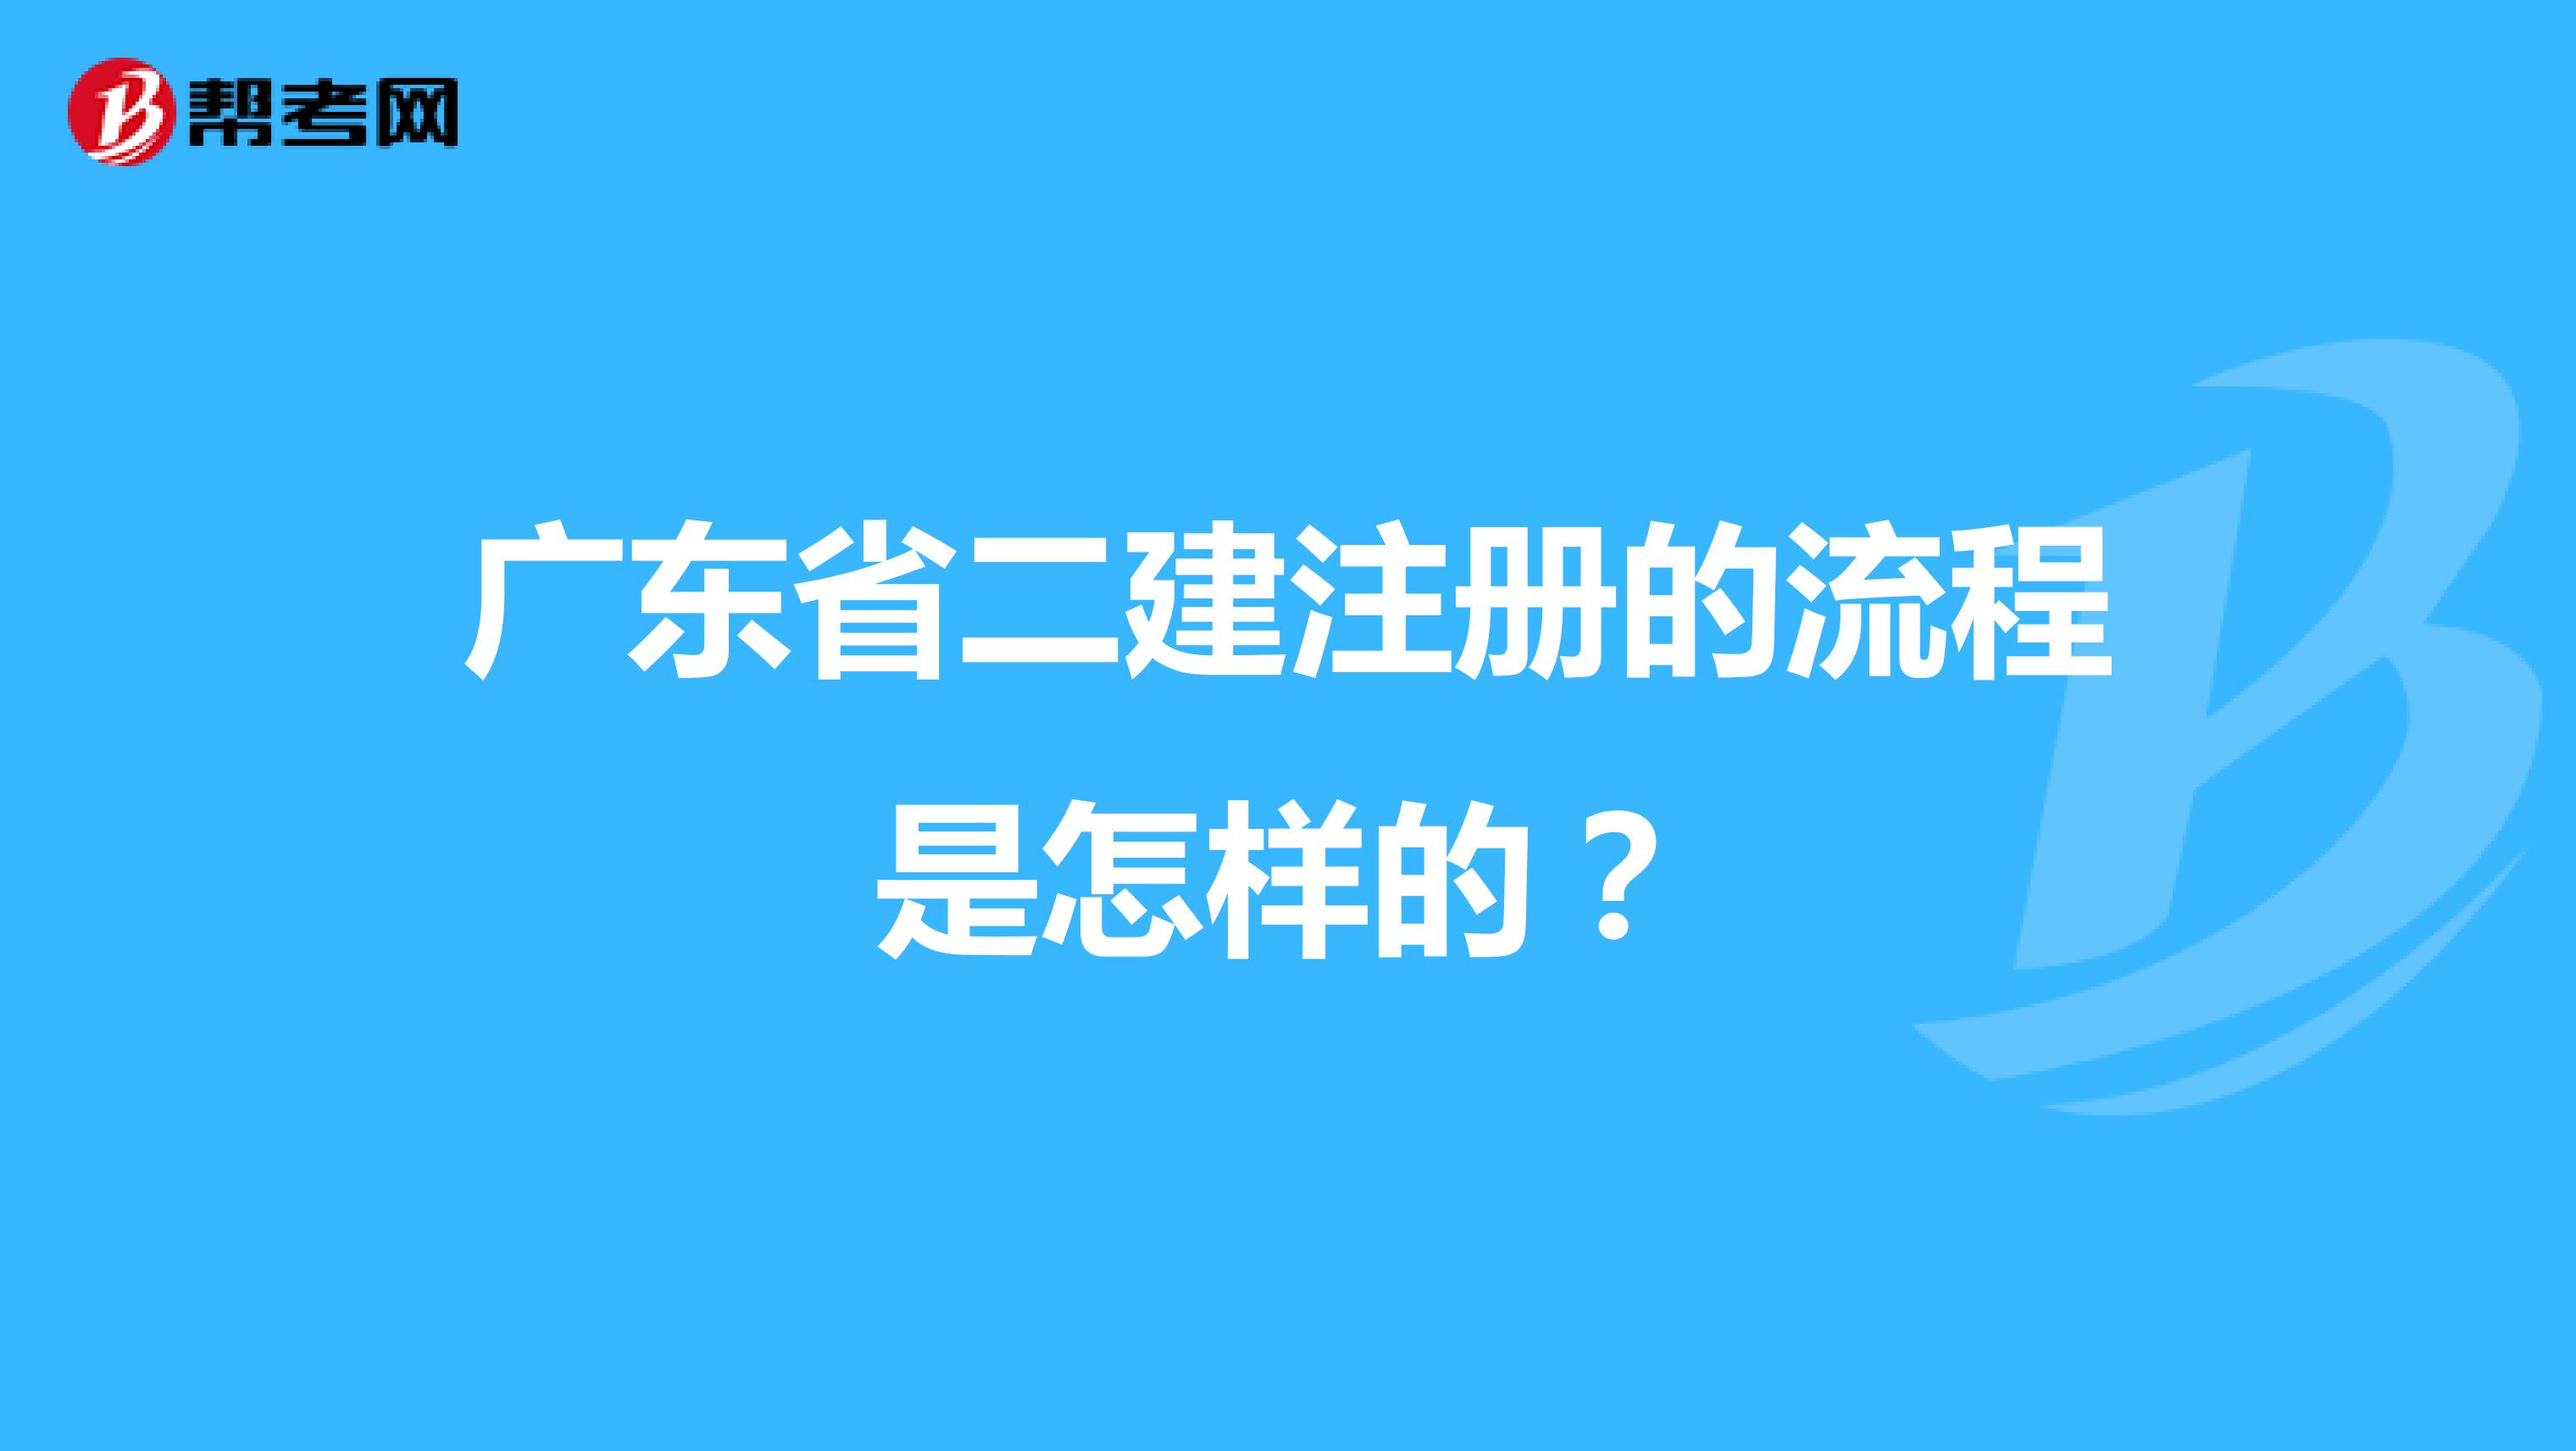 广东省二建注册的流程是怎样的？